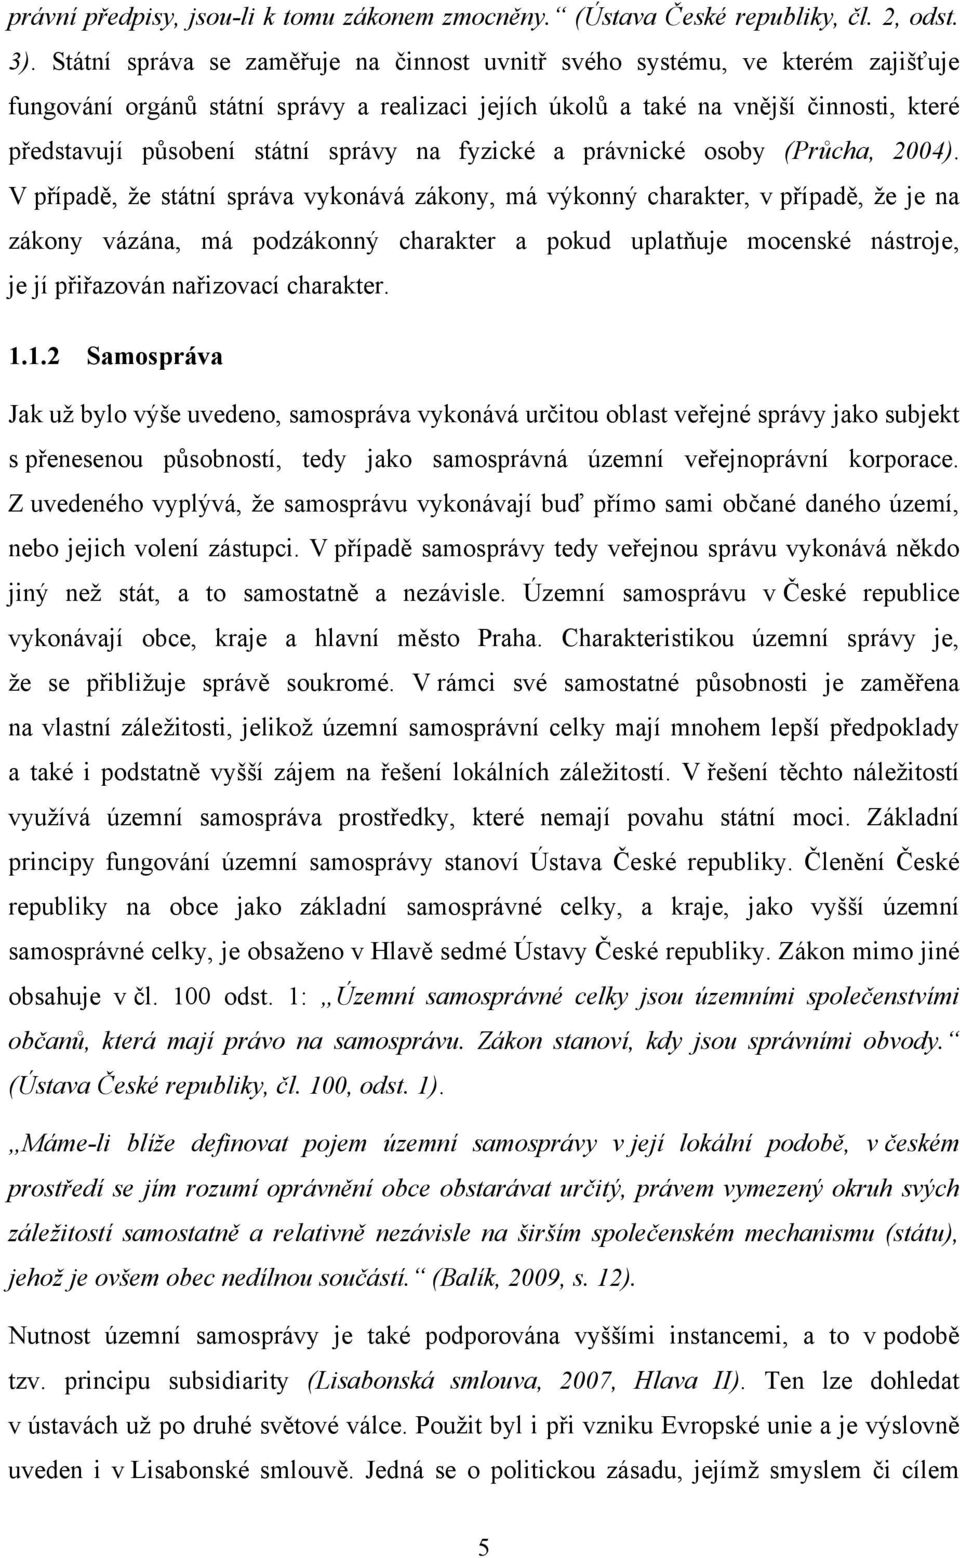 správy na fyzické a právnické osoby (Průcha, 2004).